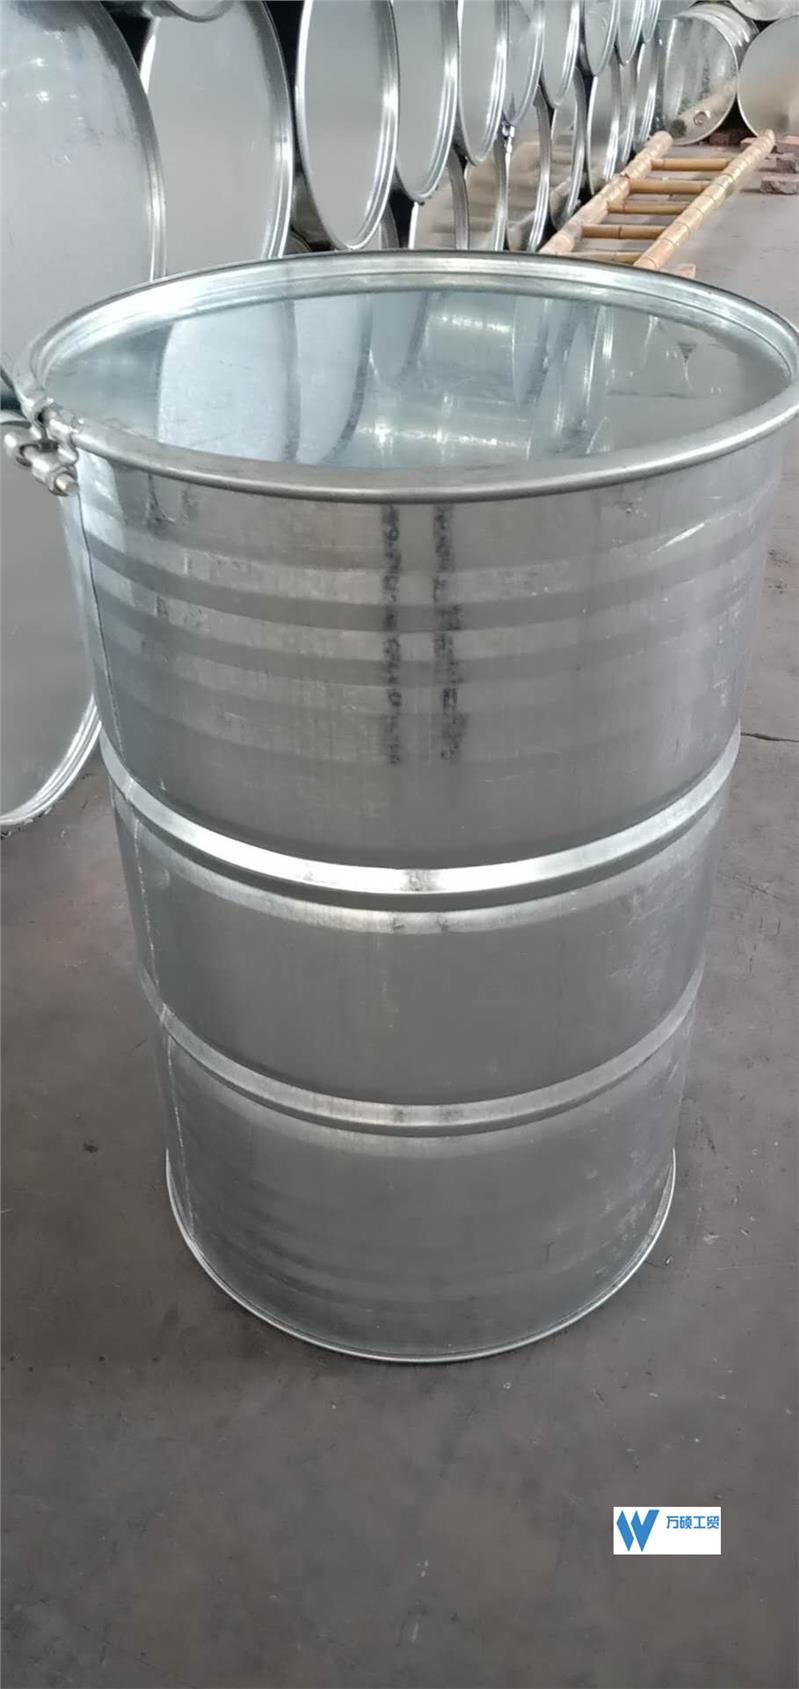 北京皮重17kg开口铁桶厂家